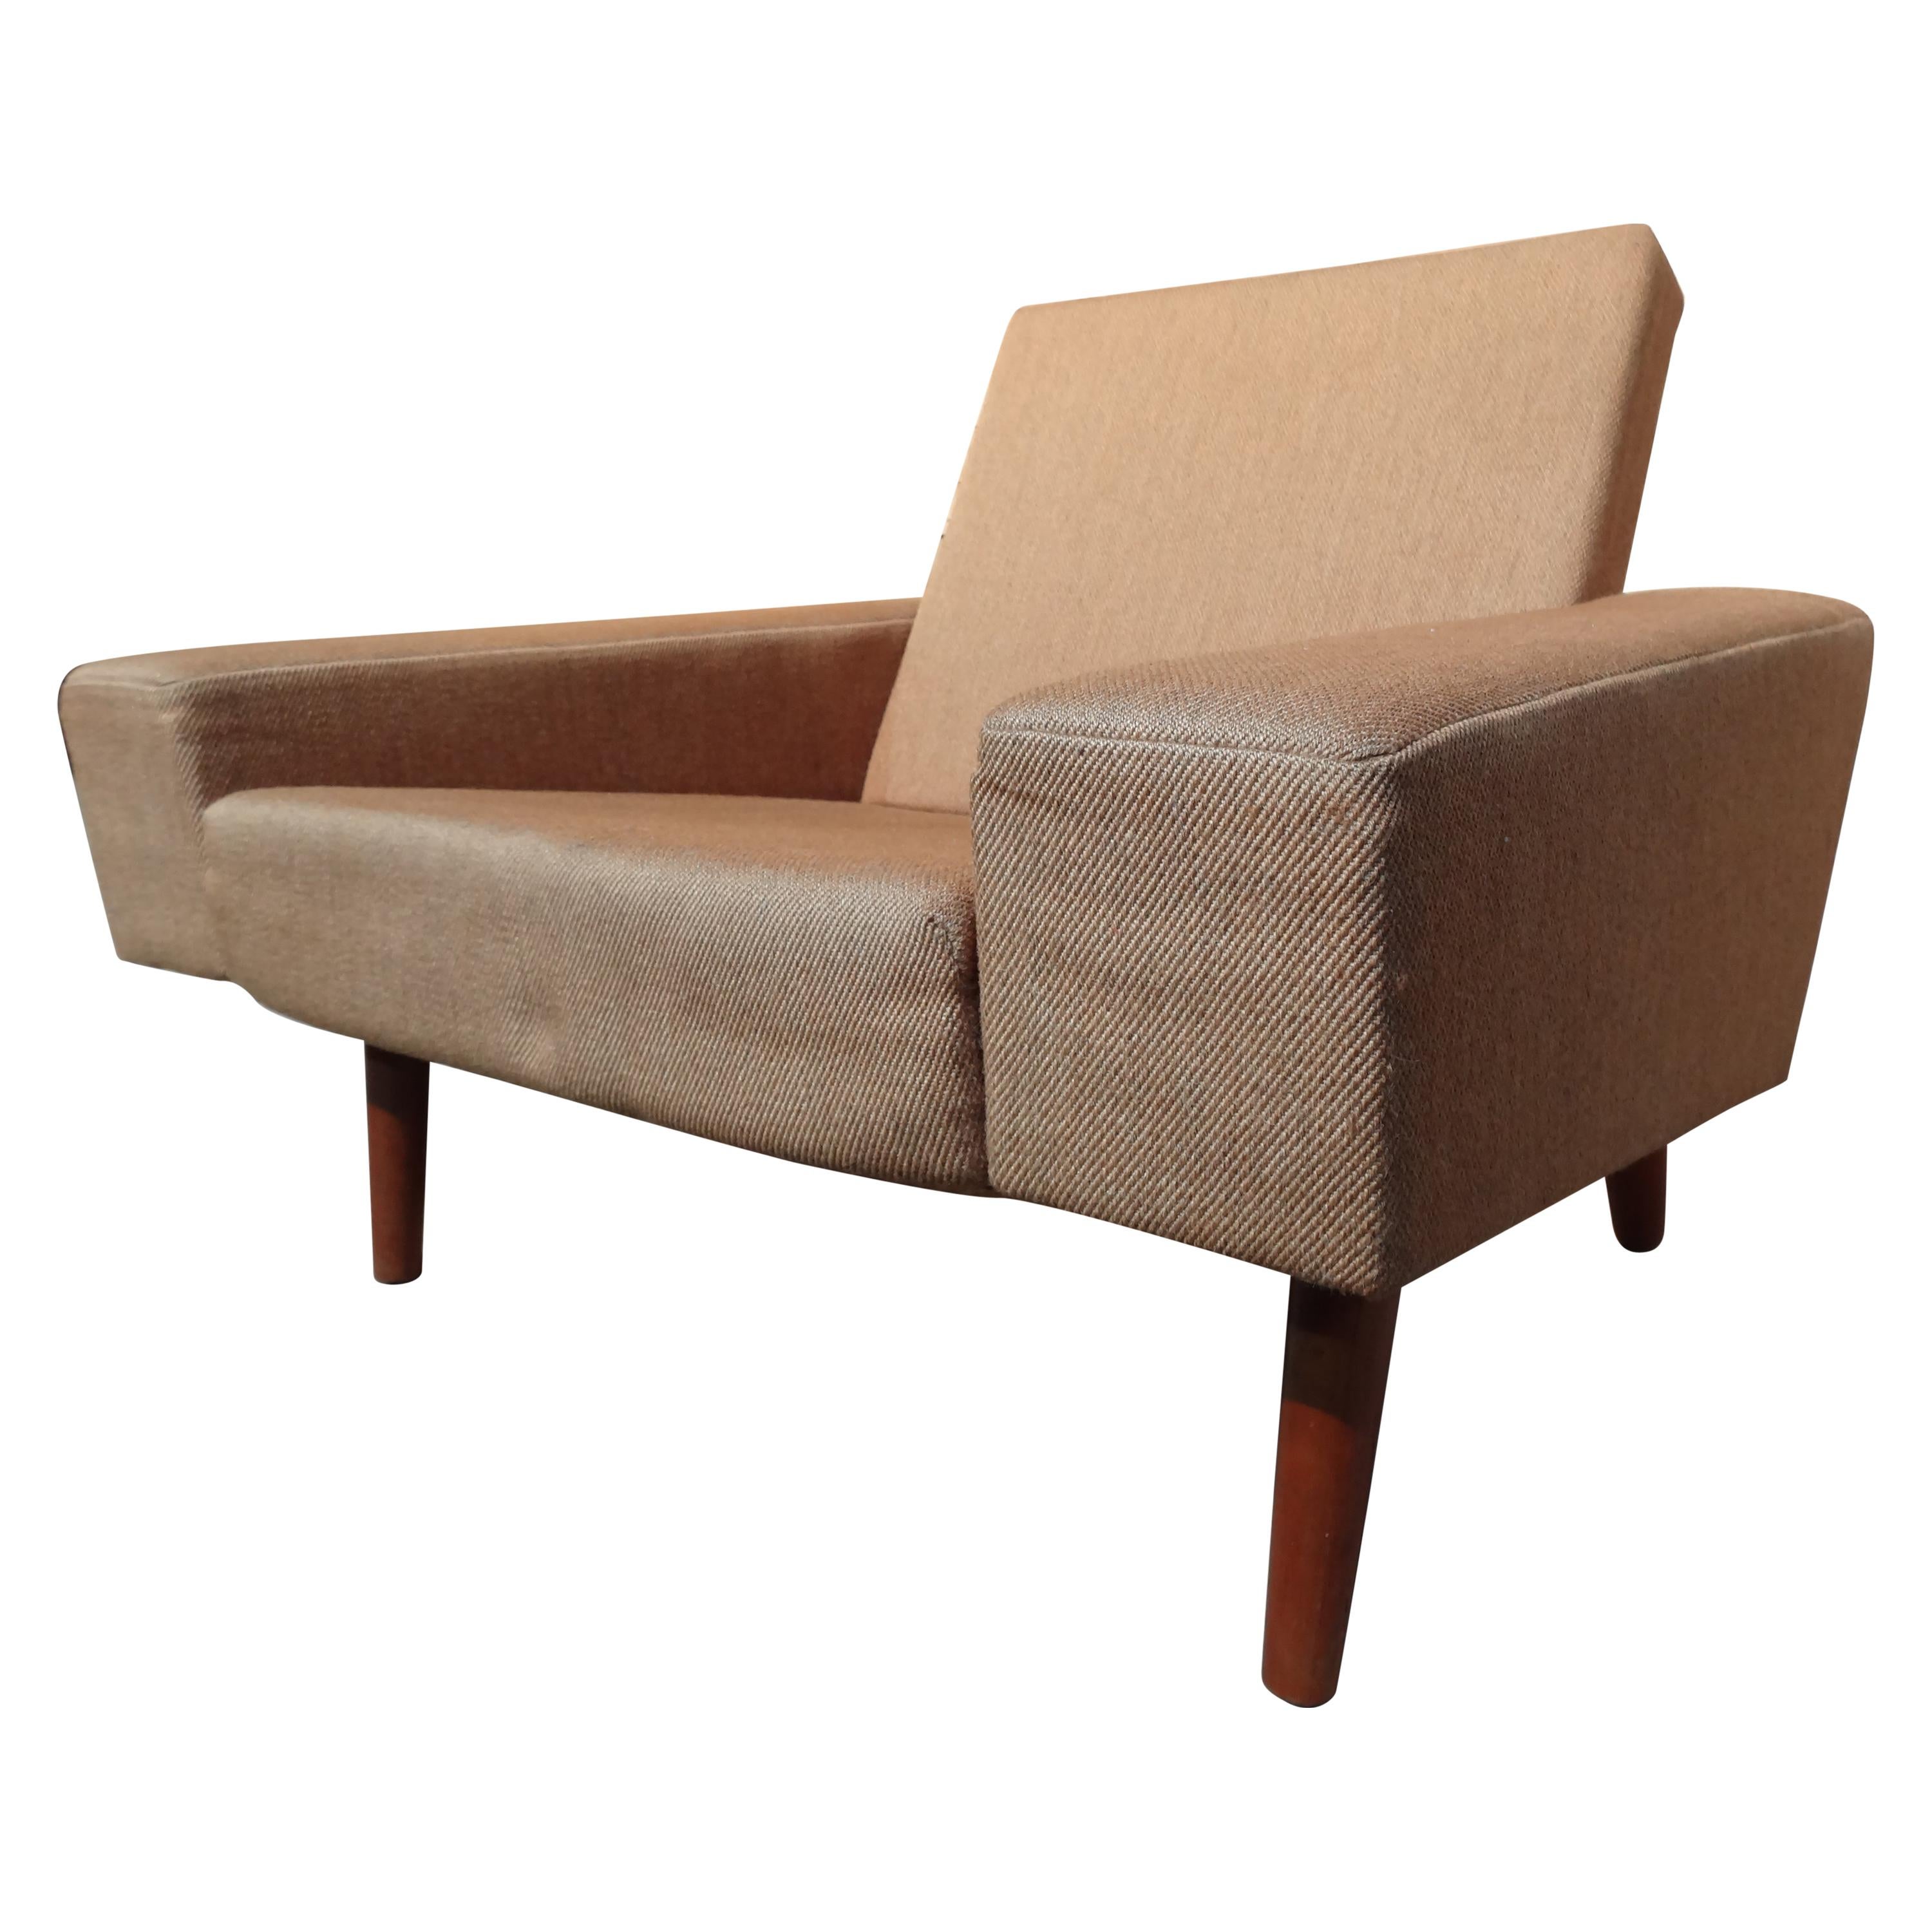 Classic Design Totally Original Retro, 1950 Danish Fabric Armchair